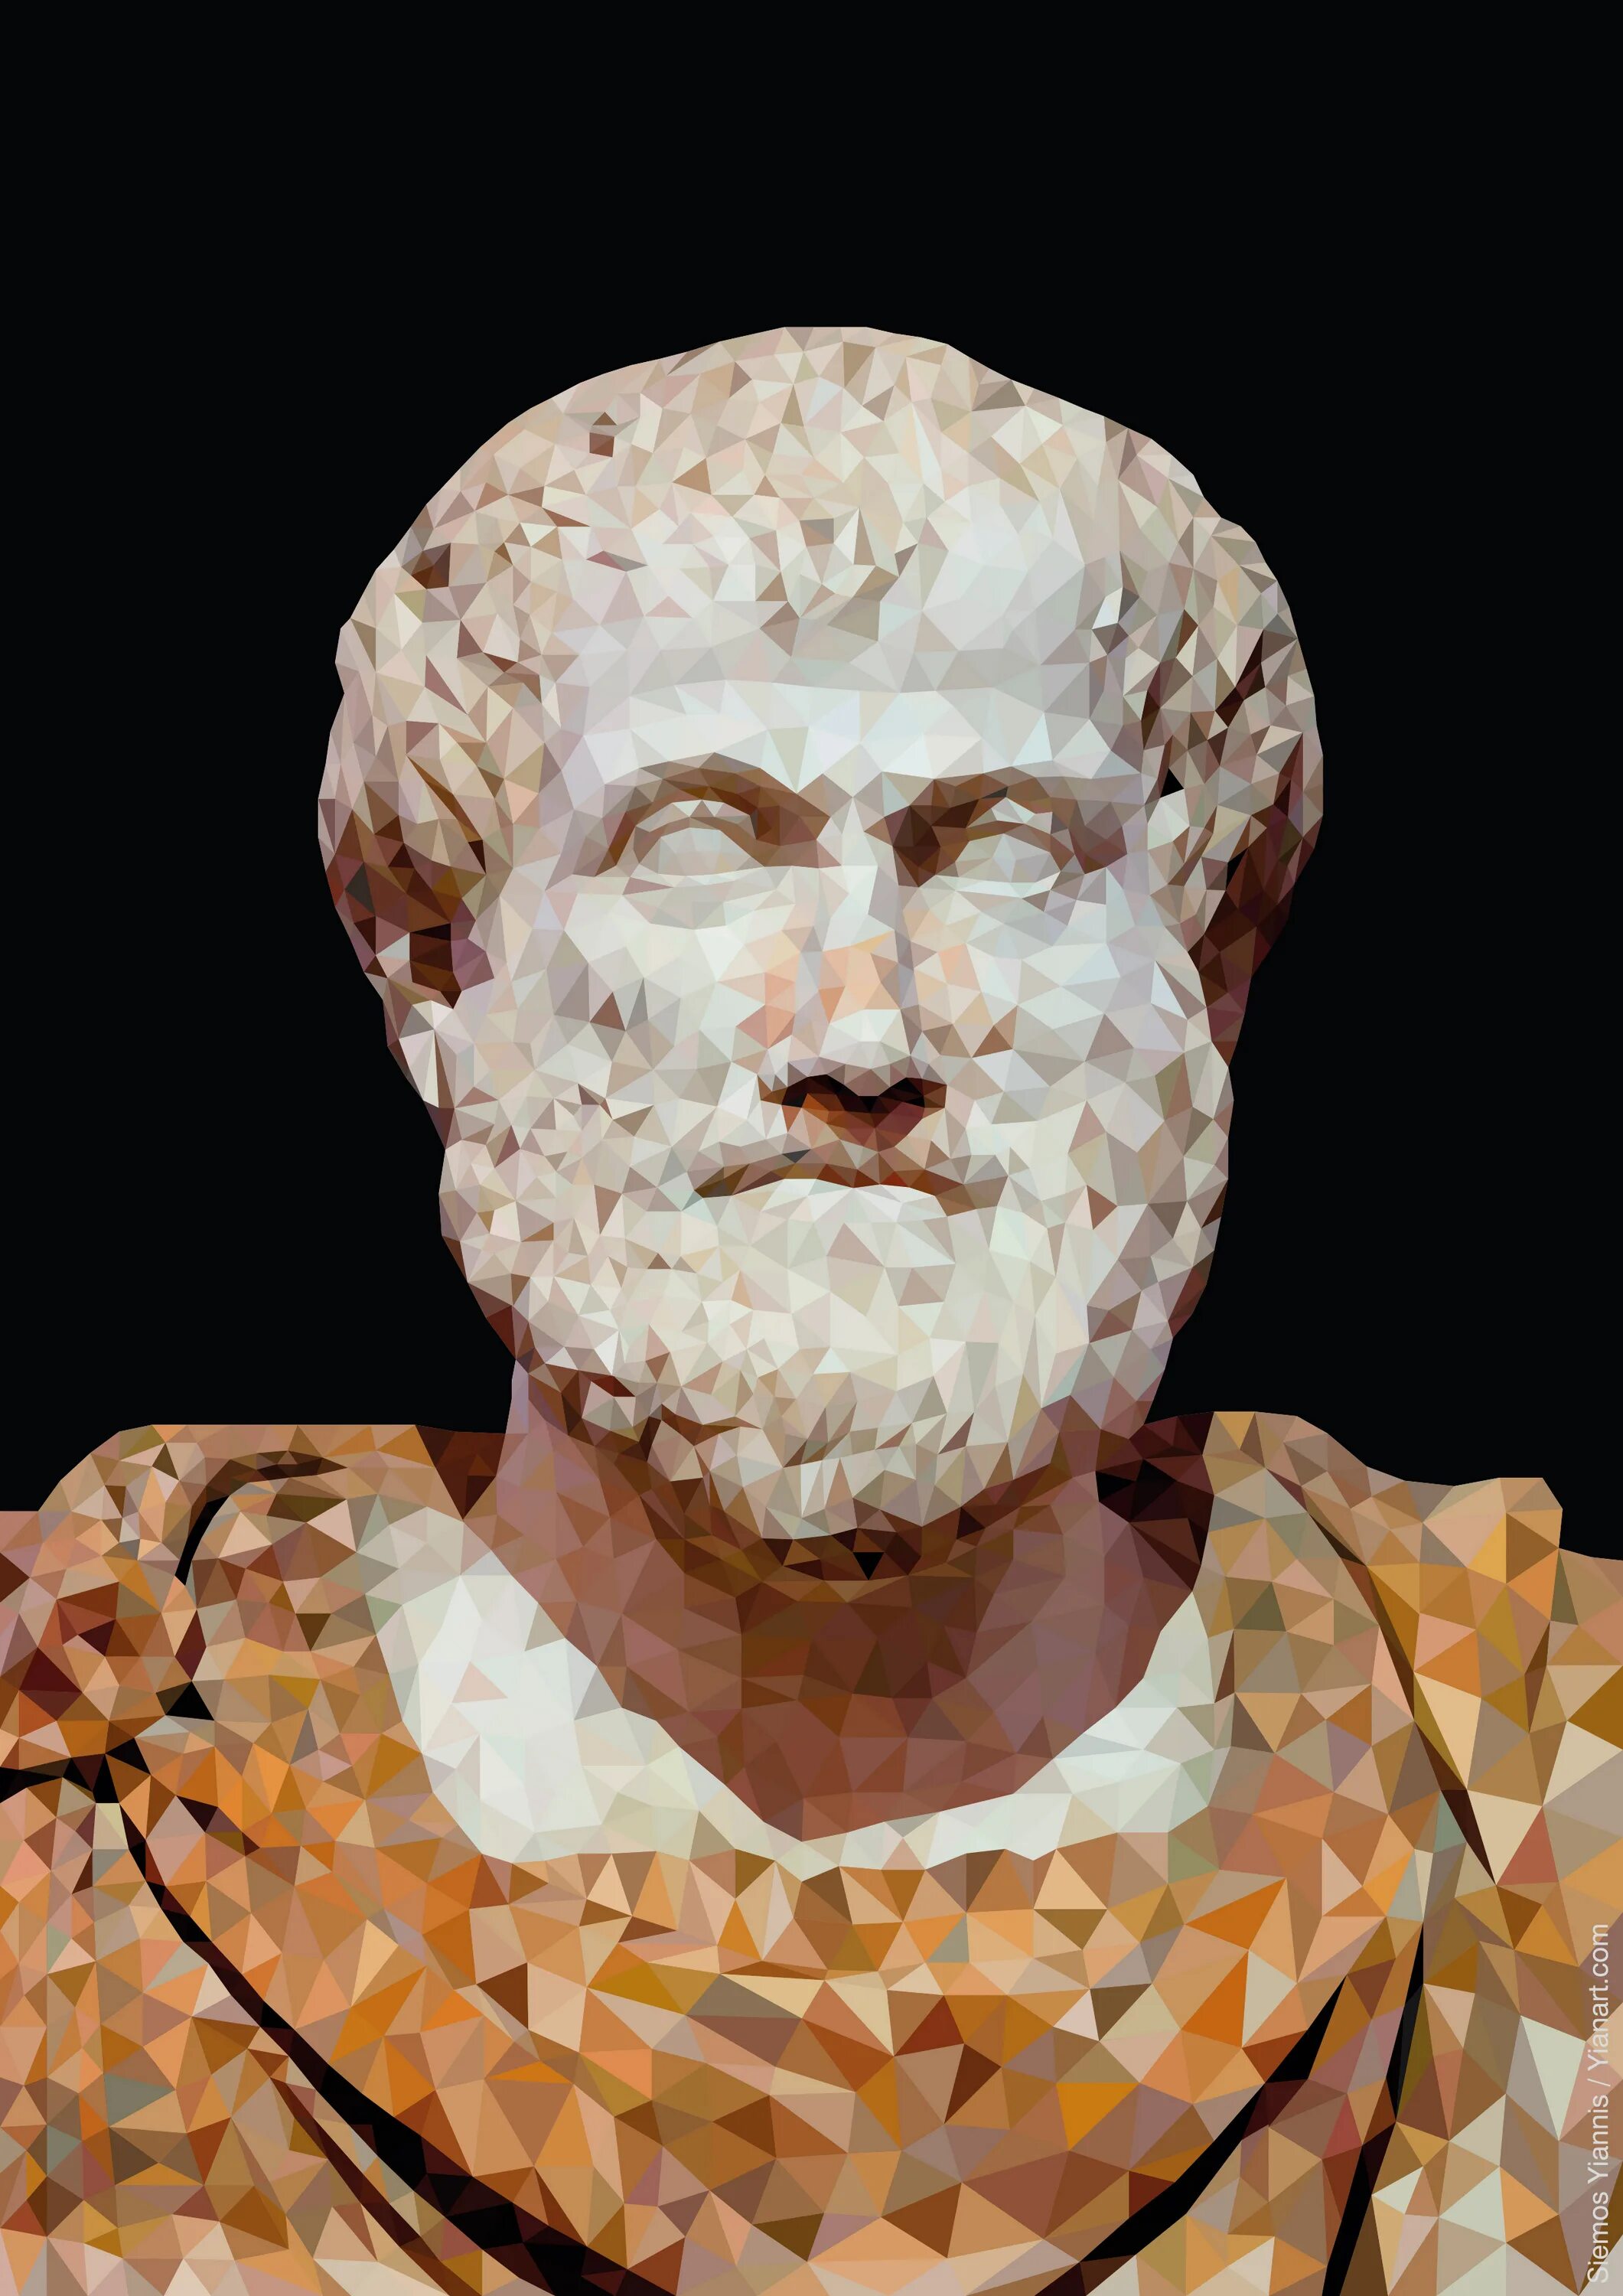 Аристотель 384-322 до н.э. Портрет философа Аристотеля. Аристотель древнегреческий философ. Аристотель (384 - 322 г. до н. э.).